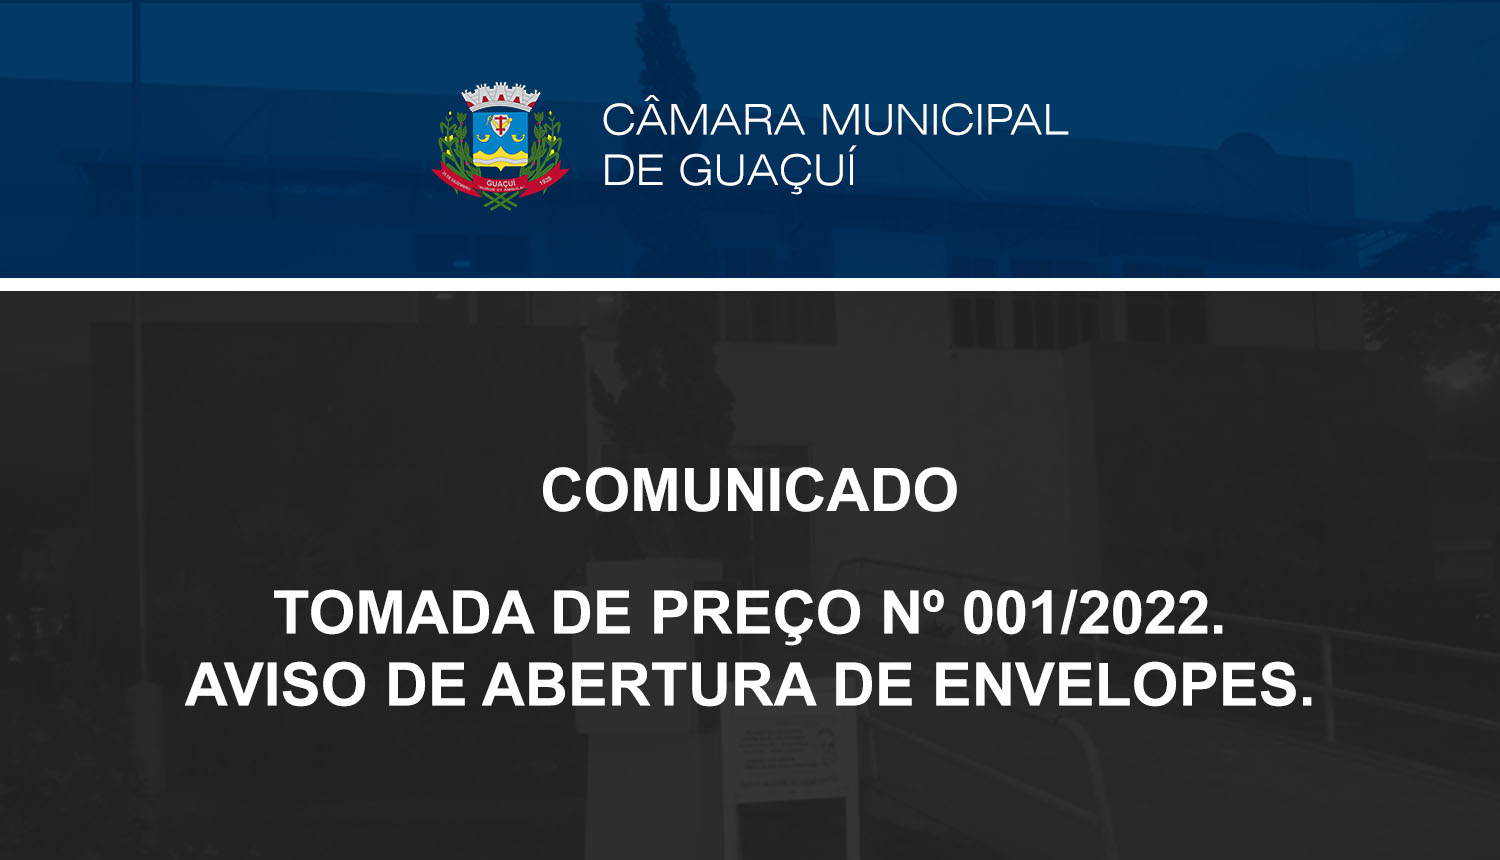 TOMADA DE PREÇO Nº 001/2022 - ABERTURA DE ENVELOPES.